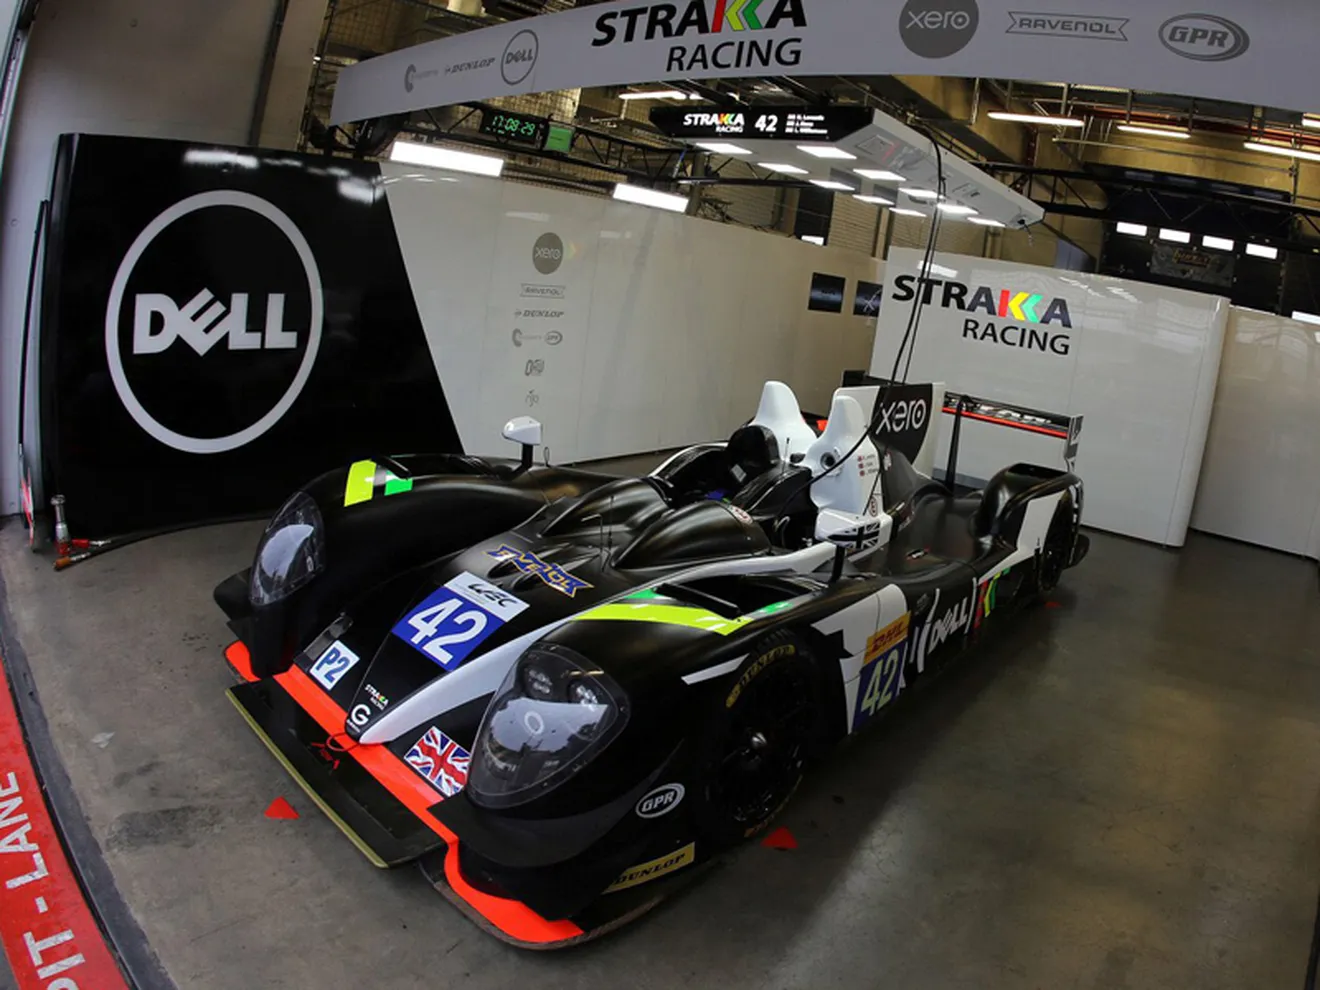 Strakka Racing descarta su proyecto en LMP1 para 2017